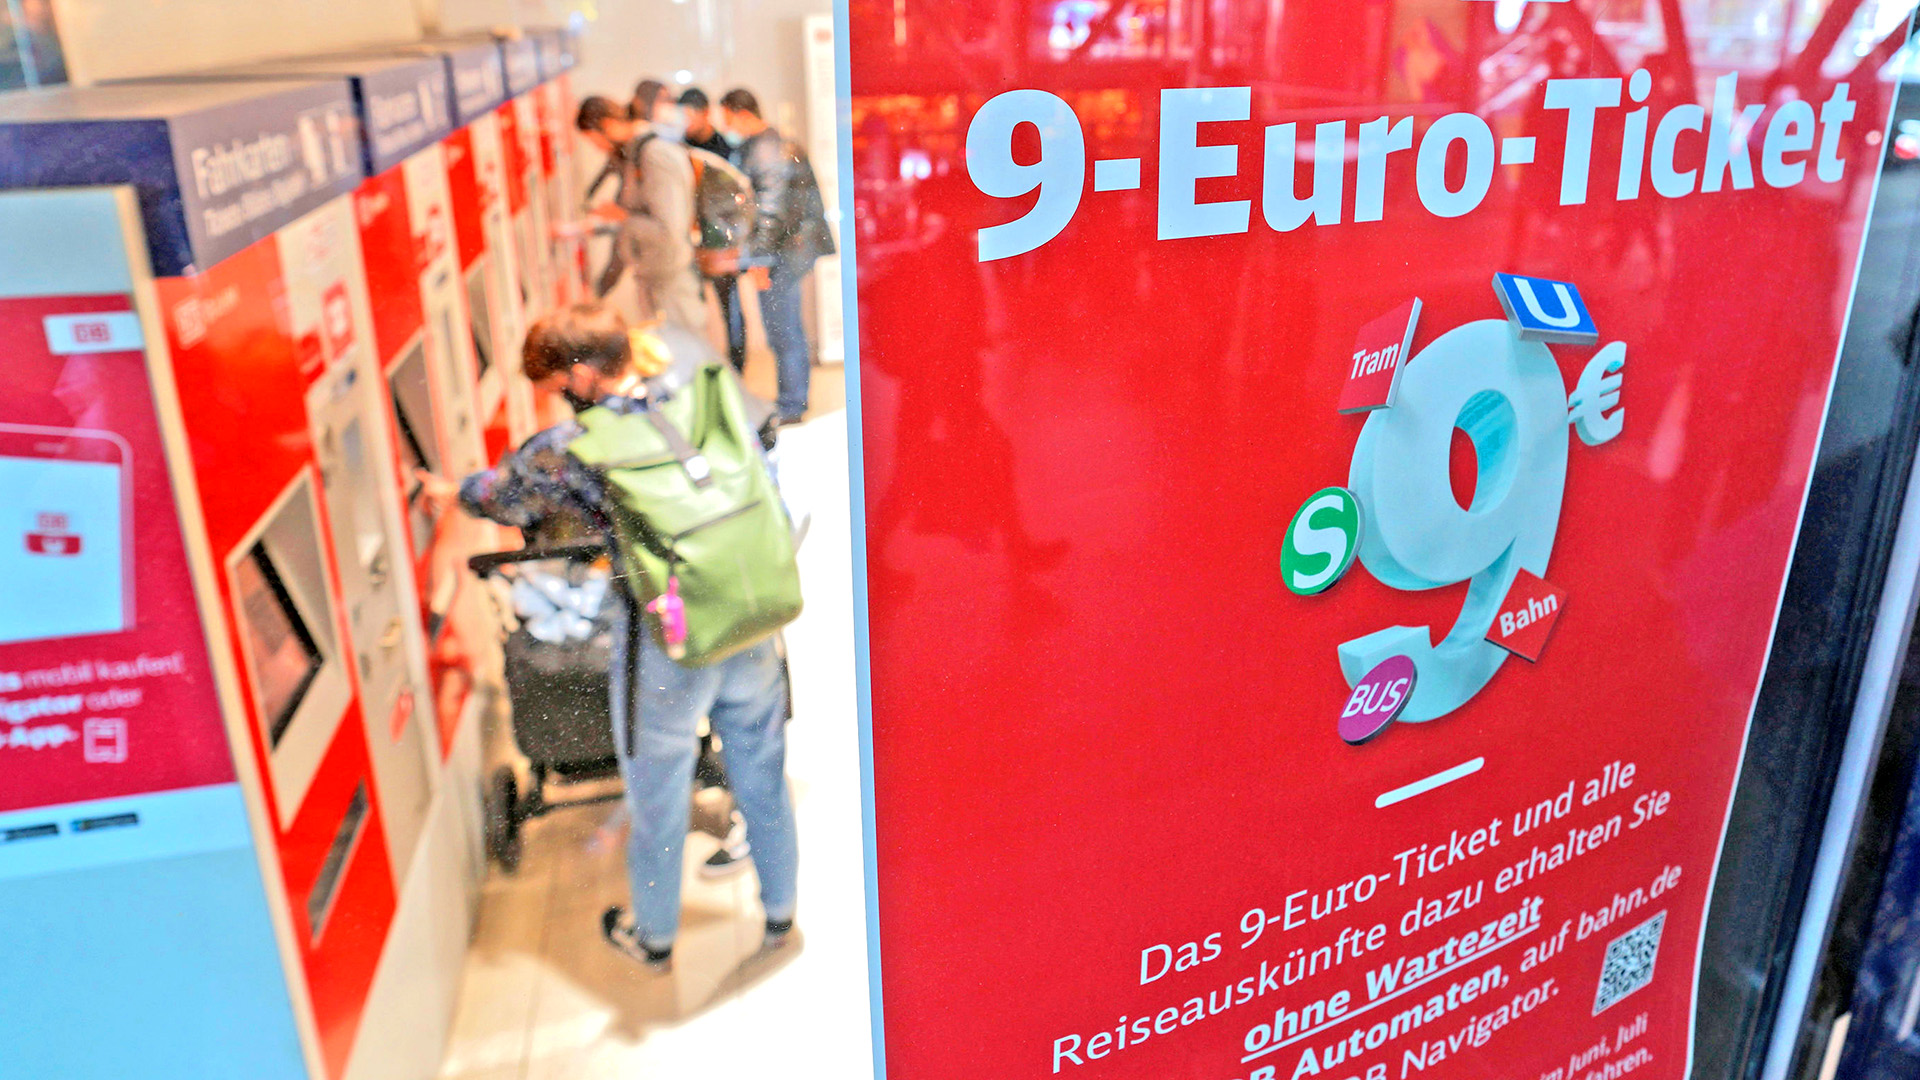 Werbeaufsteller für das 9-Euro-Ticket steht vor Fahrkartenautomaten der Deutschen Bahn